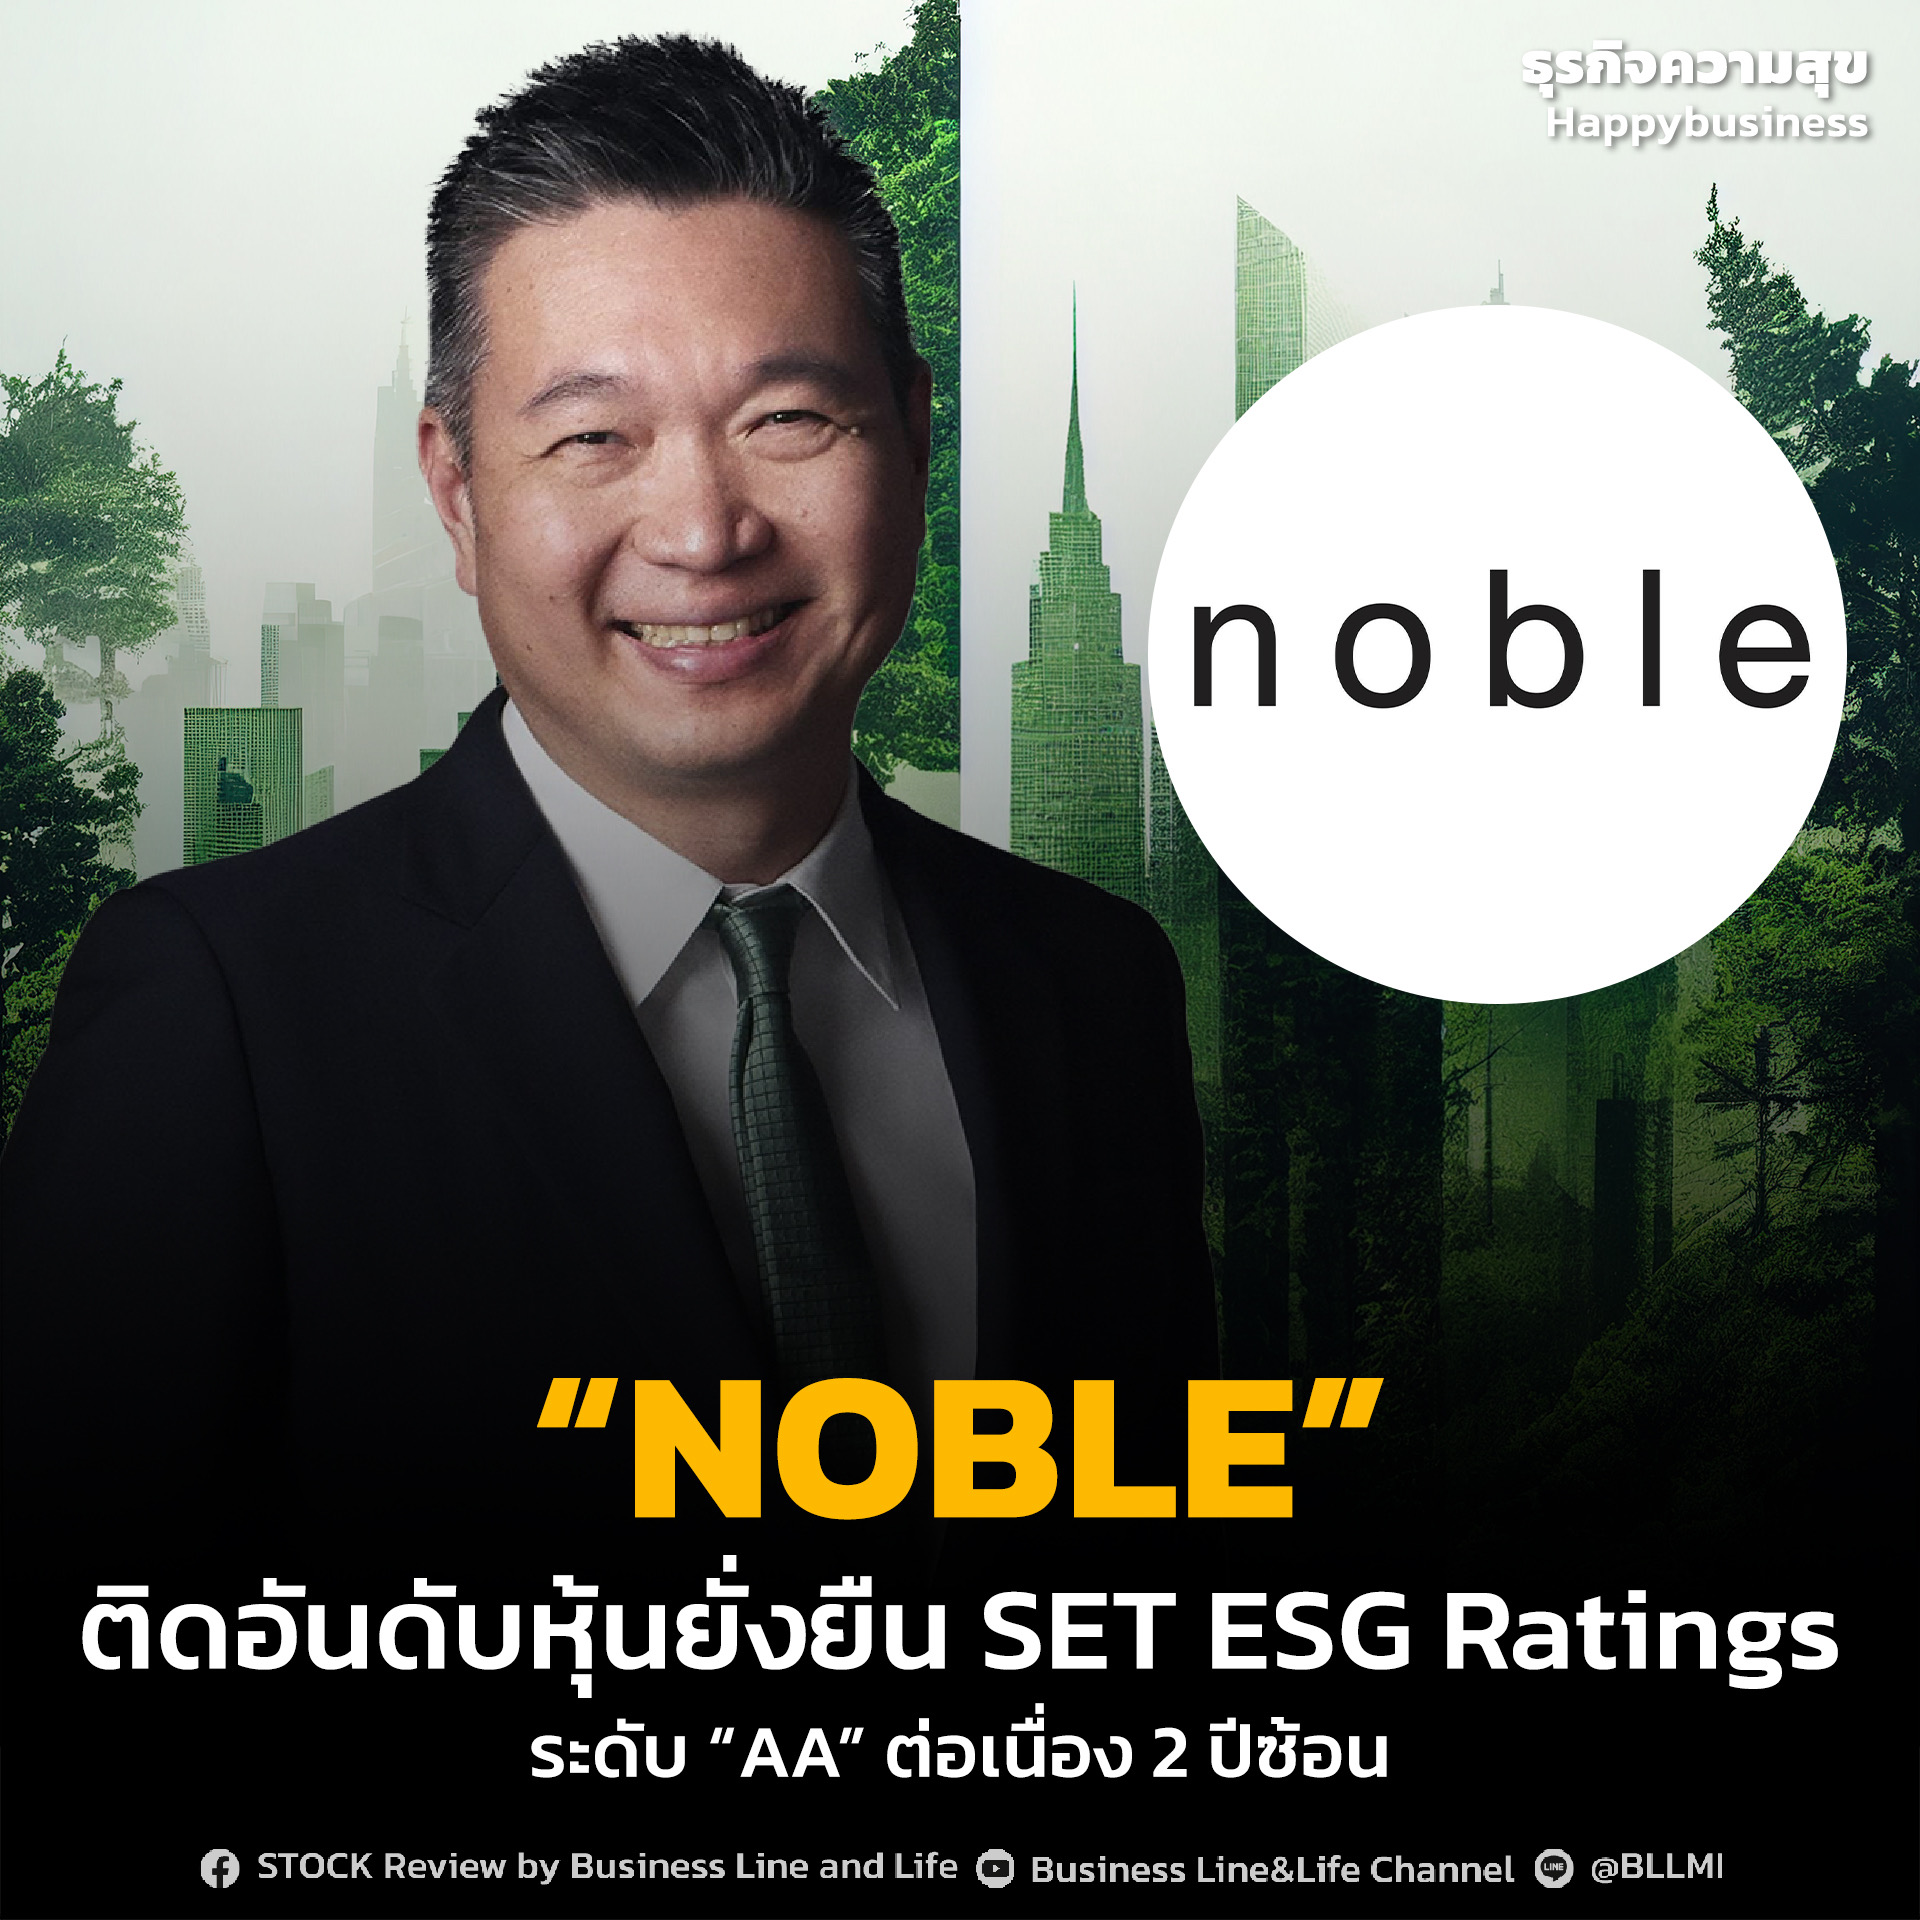 “NOBLE” ติดอันดับหุ้นยั่งยืน SET ESG Ratings ระดับ “AA” ต่อเนื่อง 2 ปีซ้อน